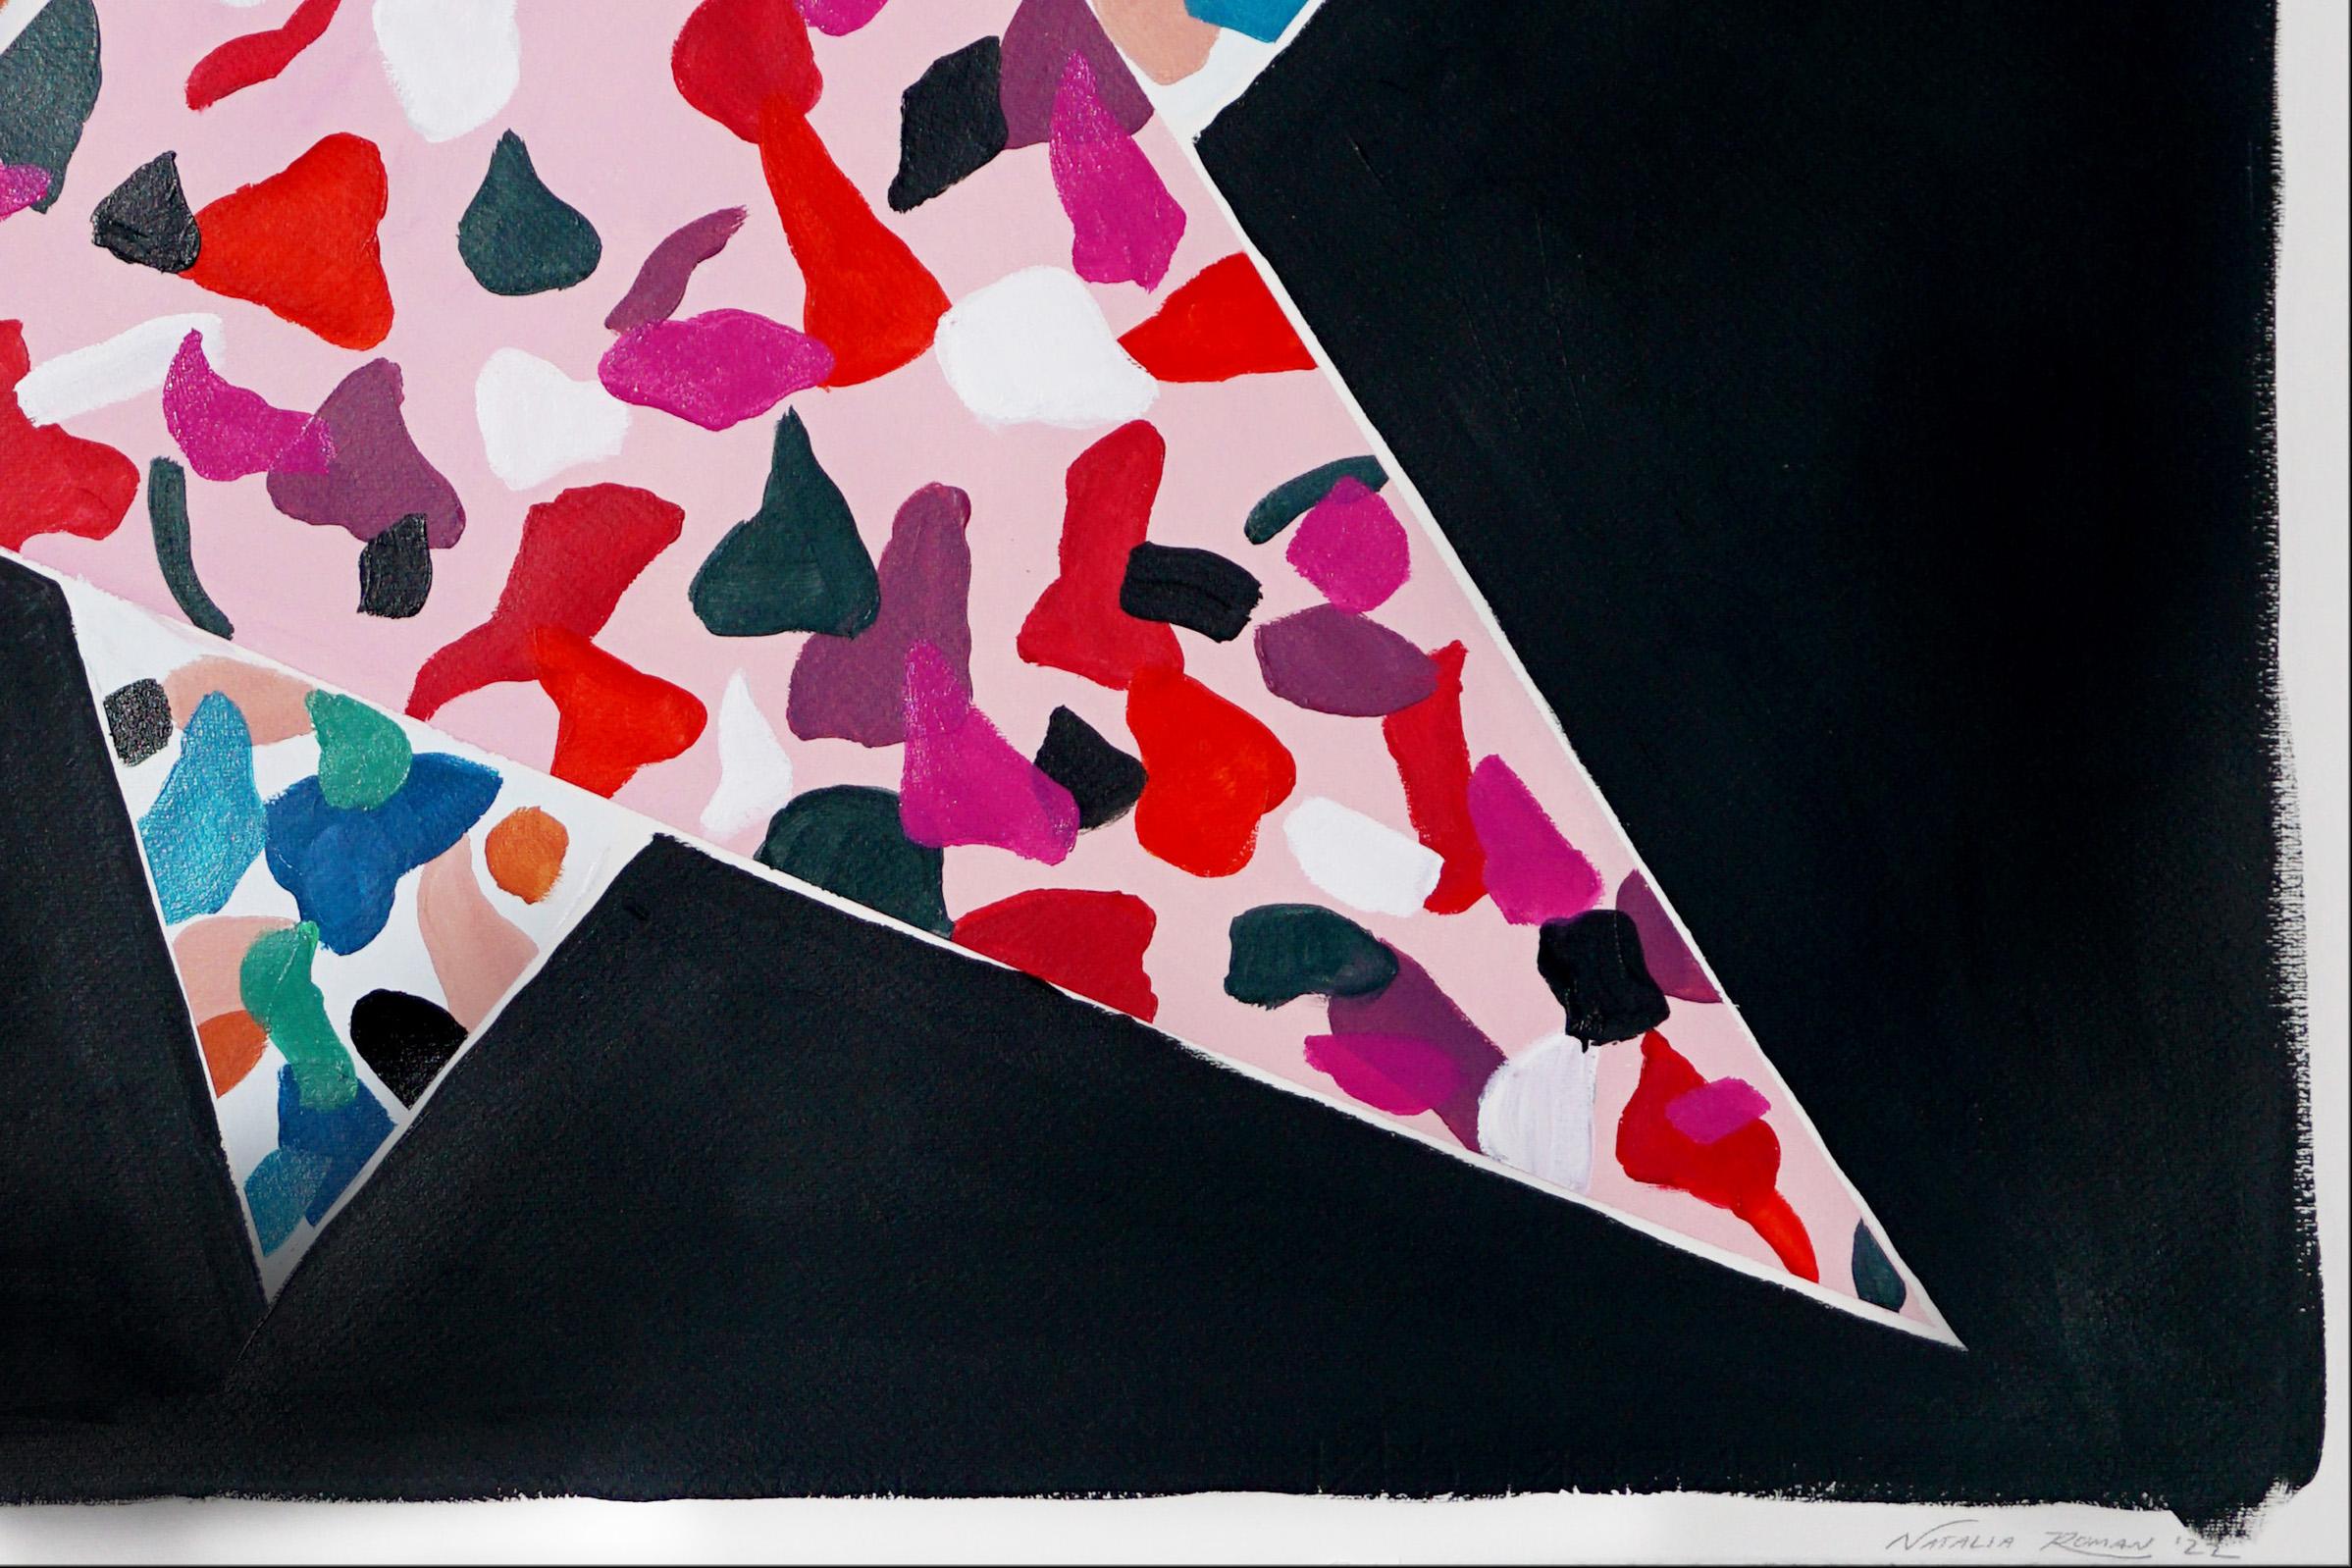 Diese Serie handbemalter Acrylgemälde von Natalia Roman ist von den Farben und Texturen der italienischen Terrazzo-Fliesenmalerei inspiriert. Die entstandenen Muster kombinieren eine Vielzahl lebendiger Farben im Vordergrund mit subtilen